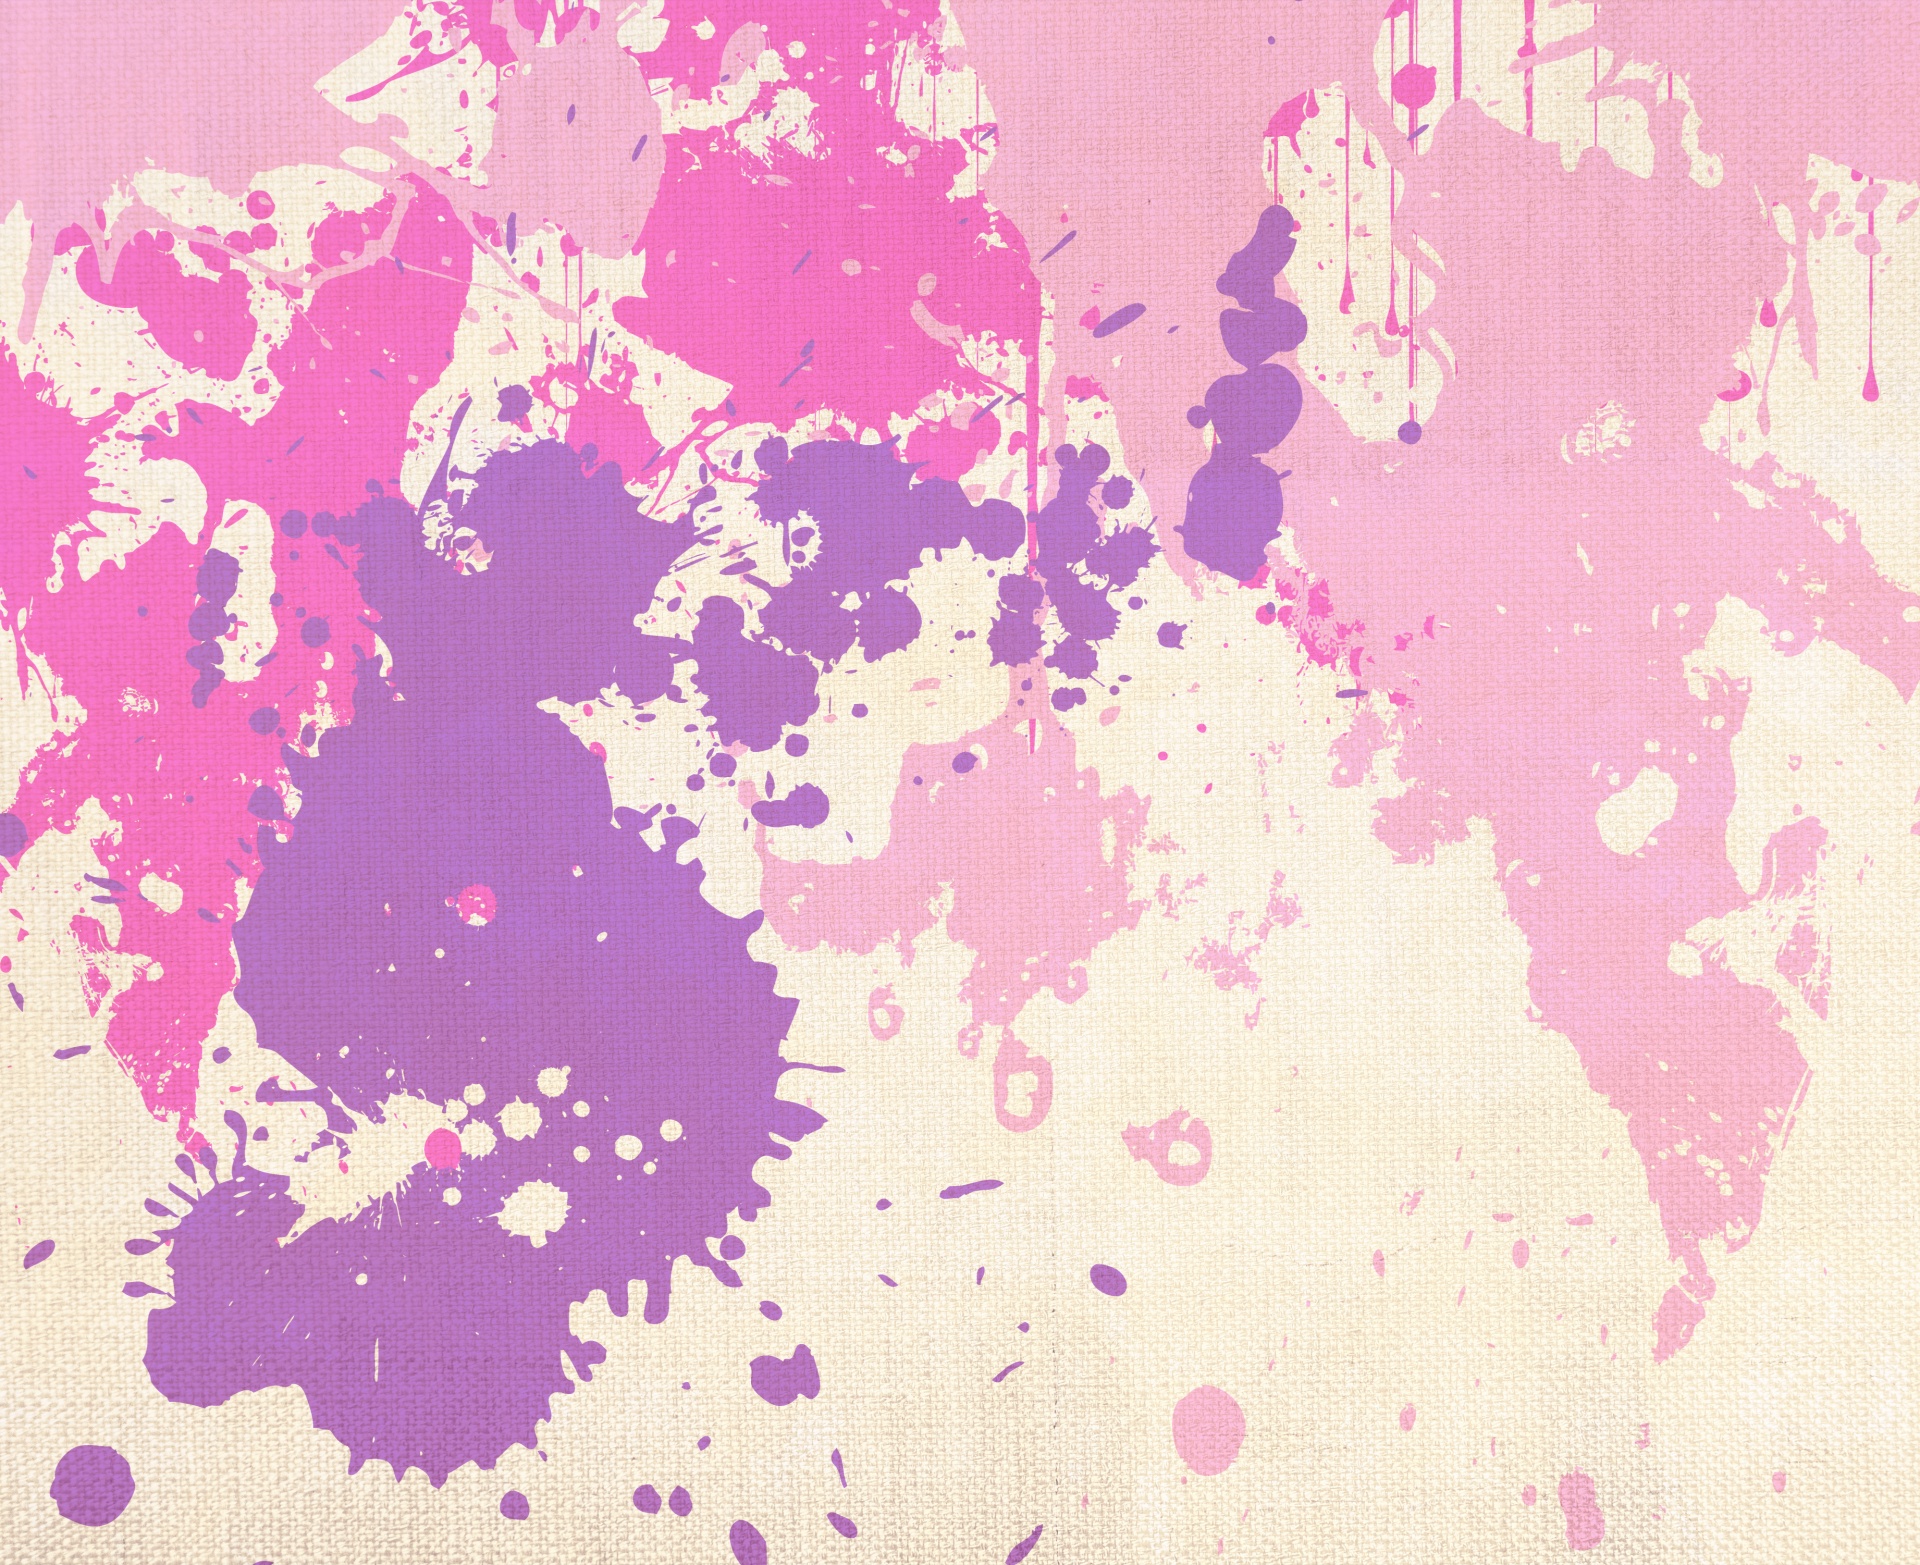 Paint Splats Purple Pink Free Stock Photo Public Domain Pictures